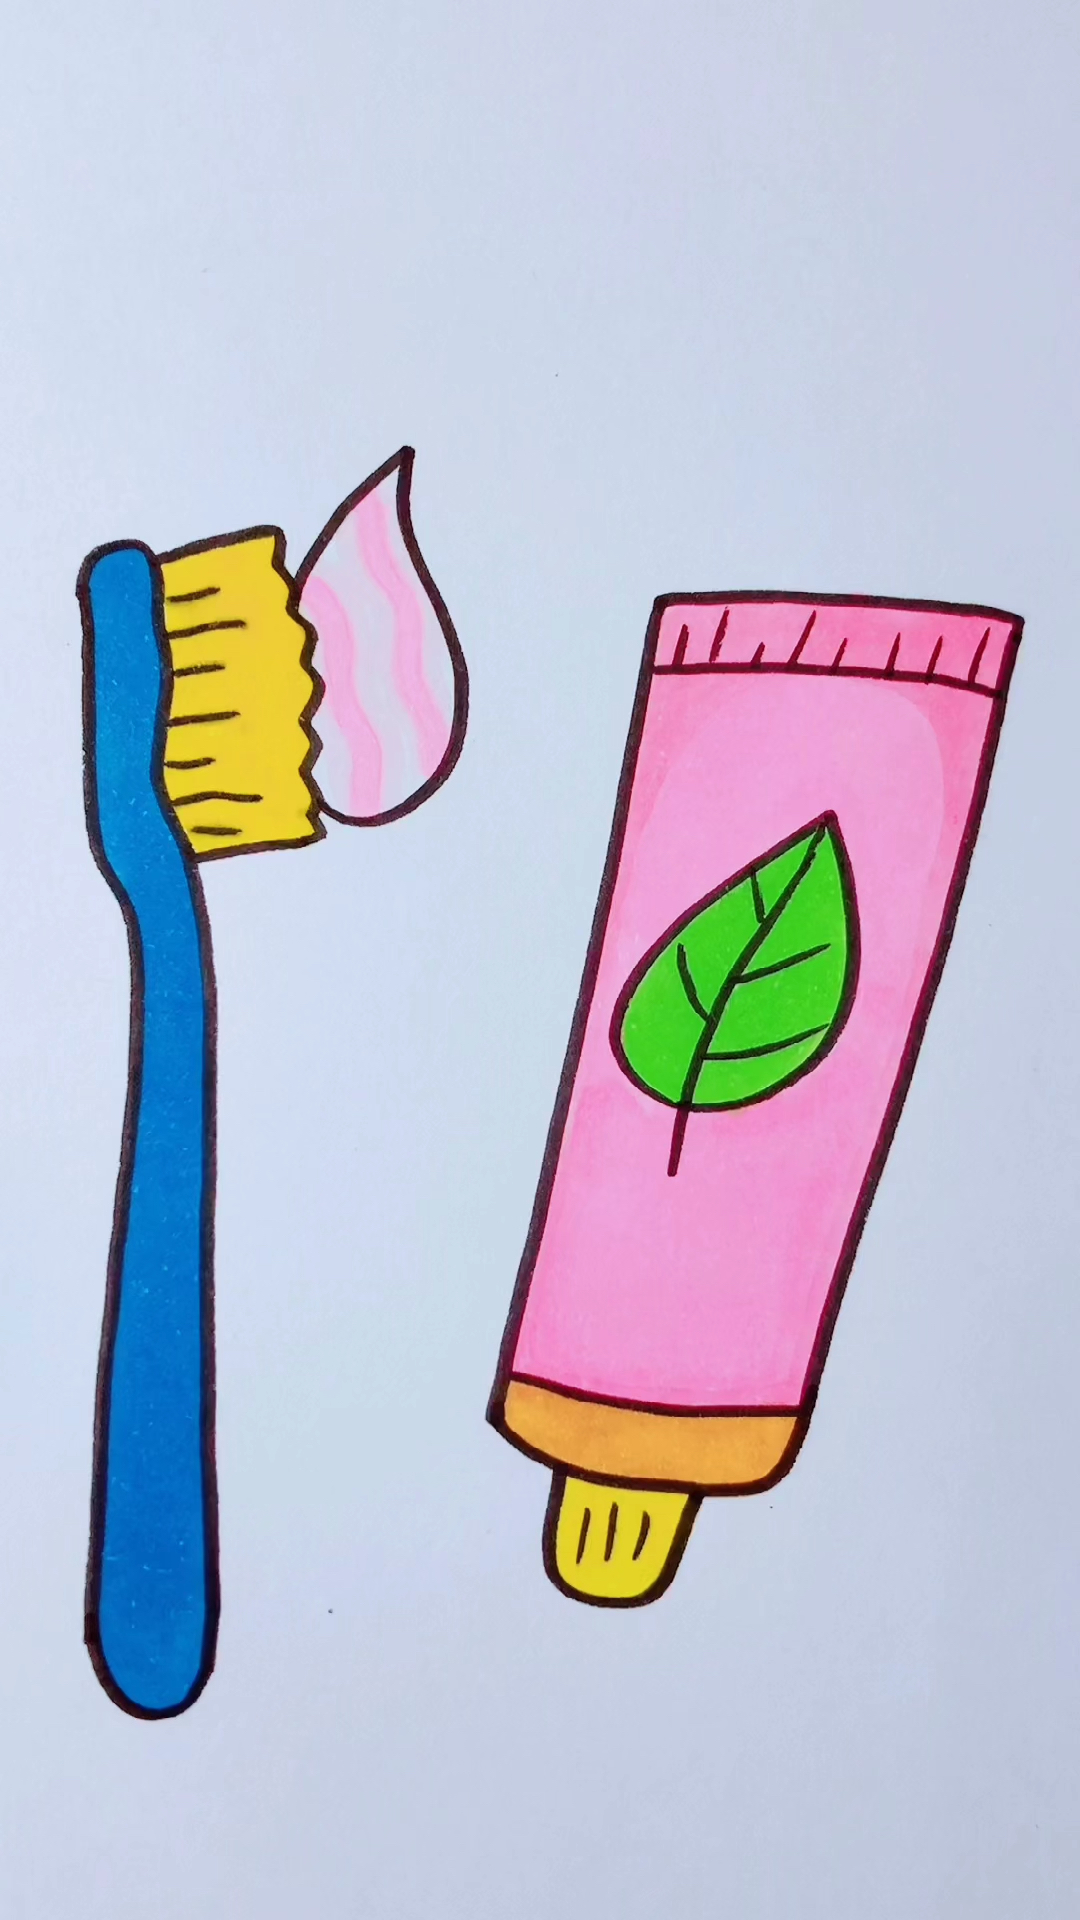 牙刷简笔画彩色儿童图片